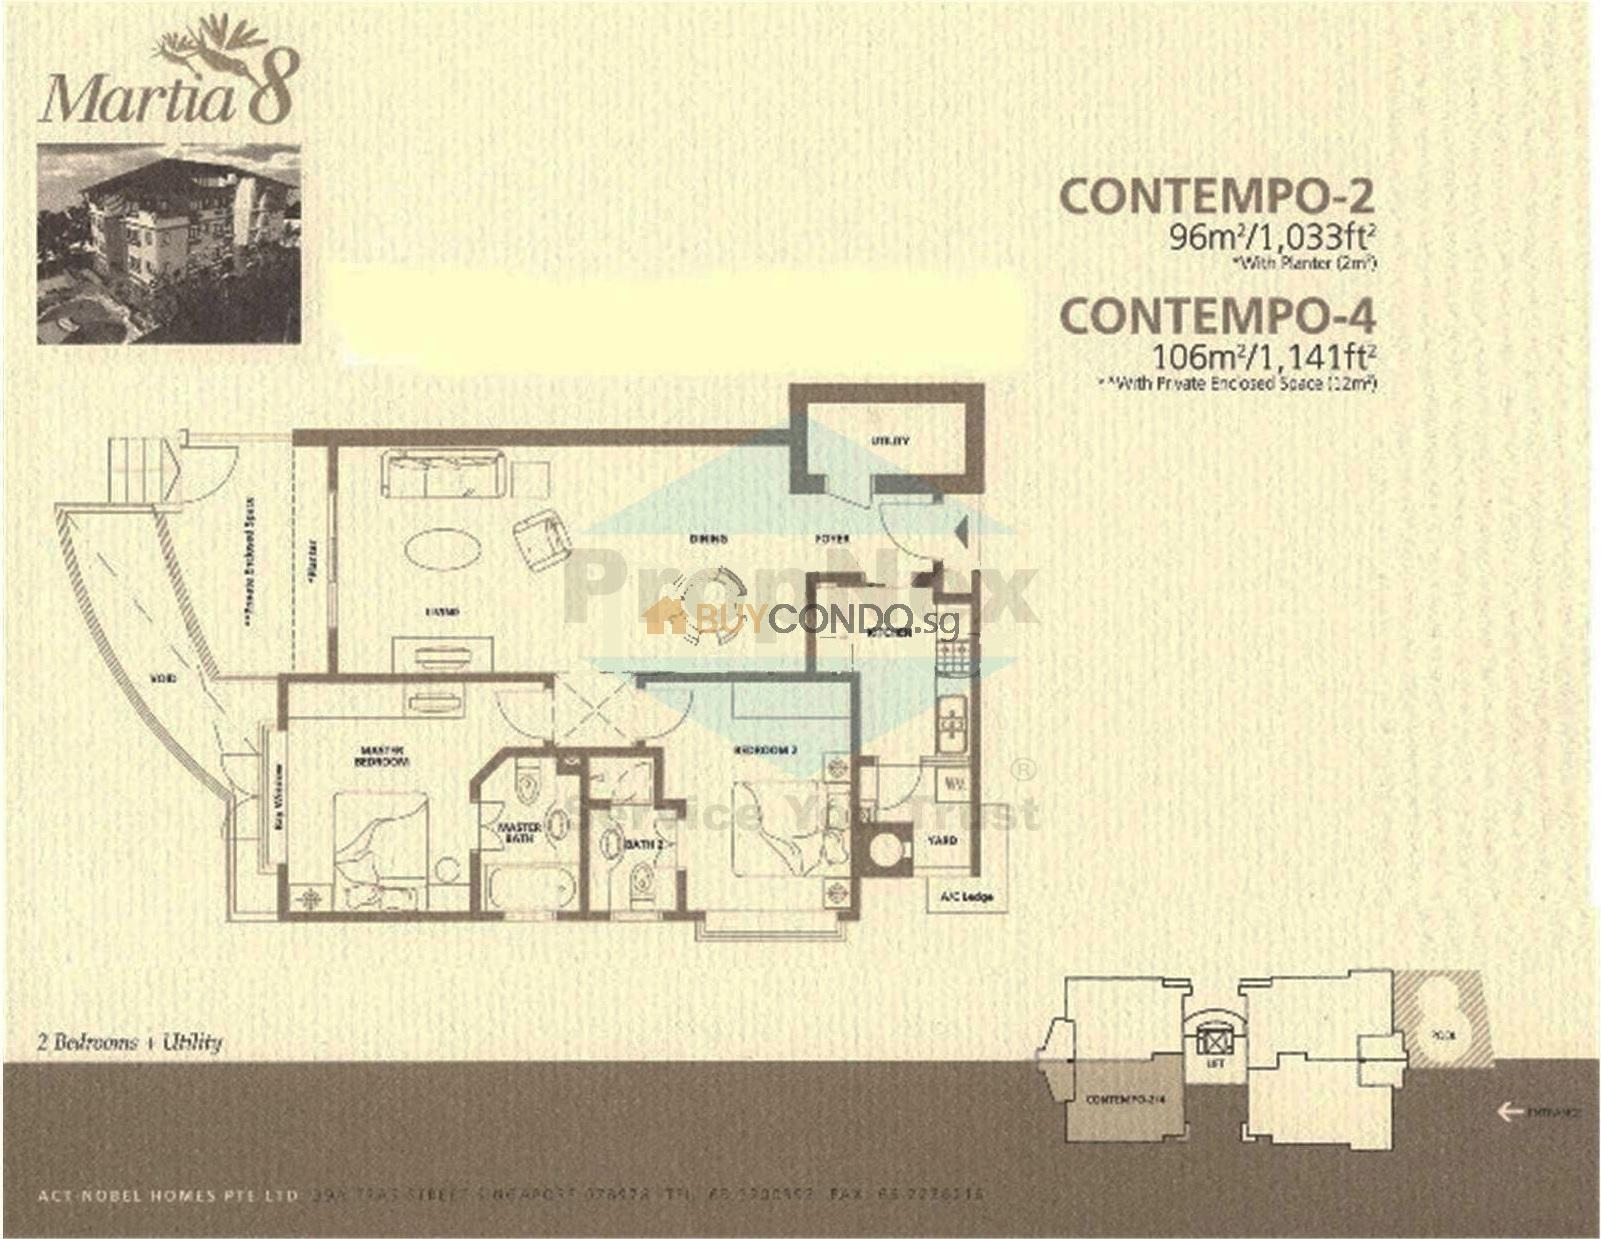 Martia 8 Condominium Floor Plan